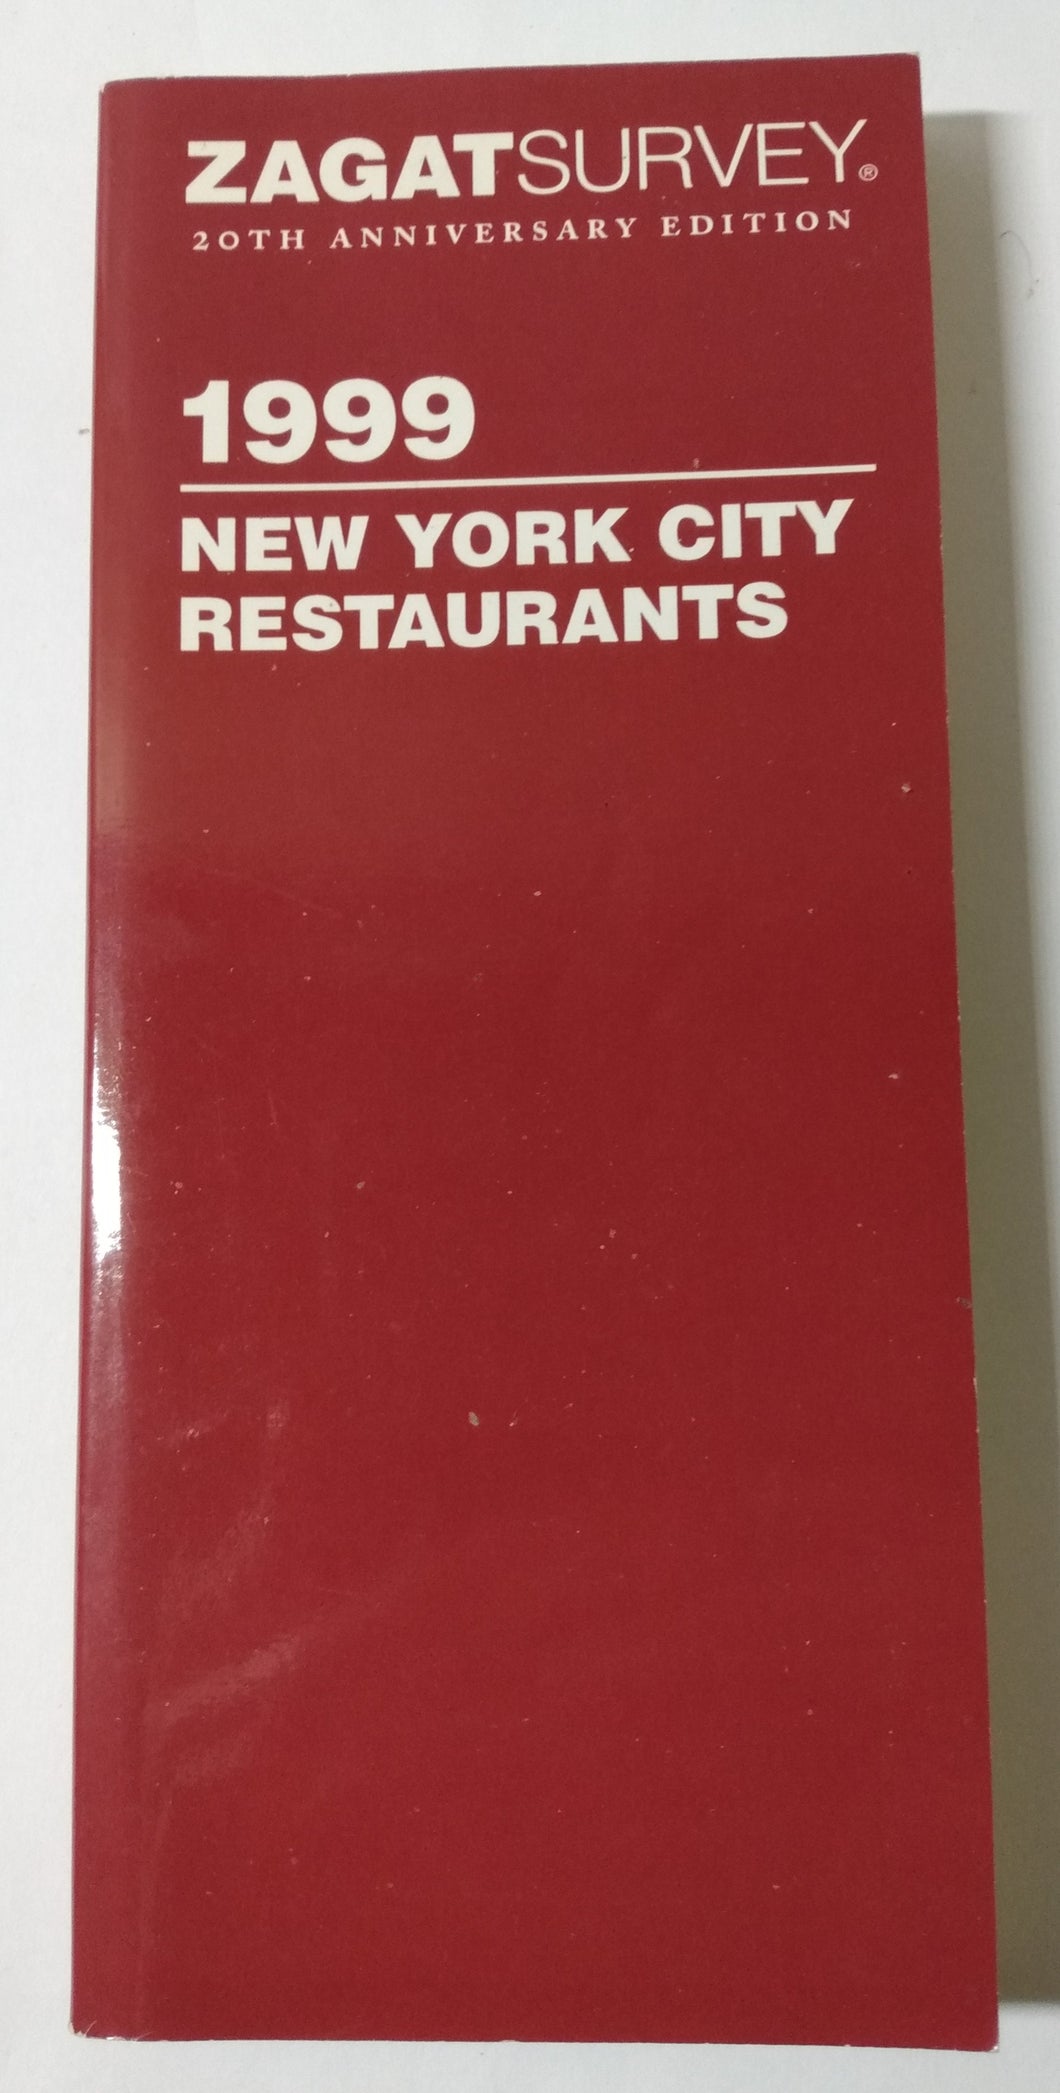 Zagat Survey New York City Restaurants 1999 - TulipStuff